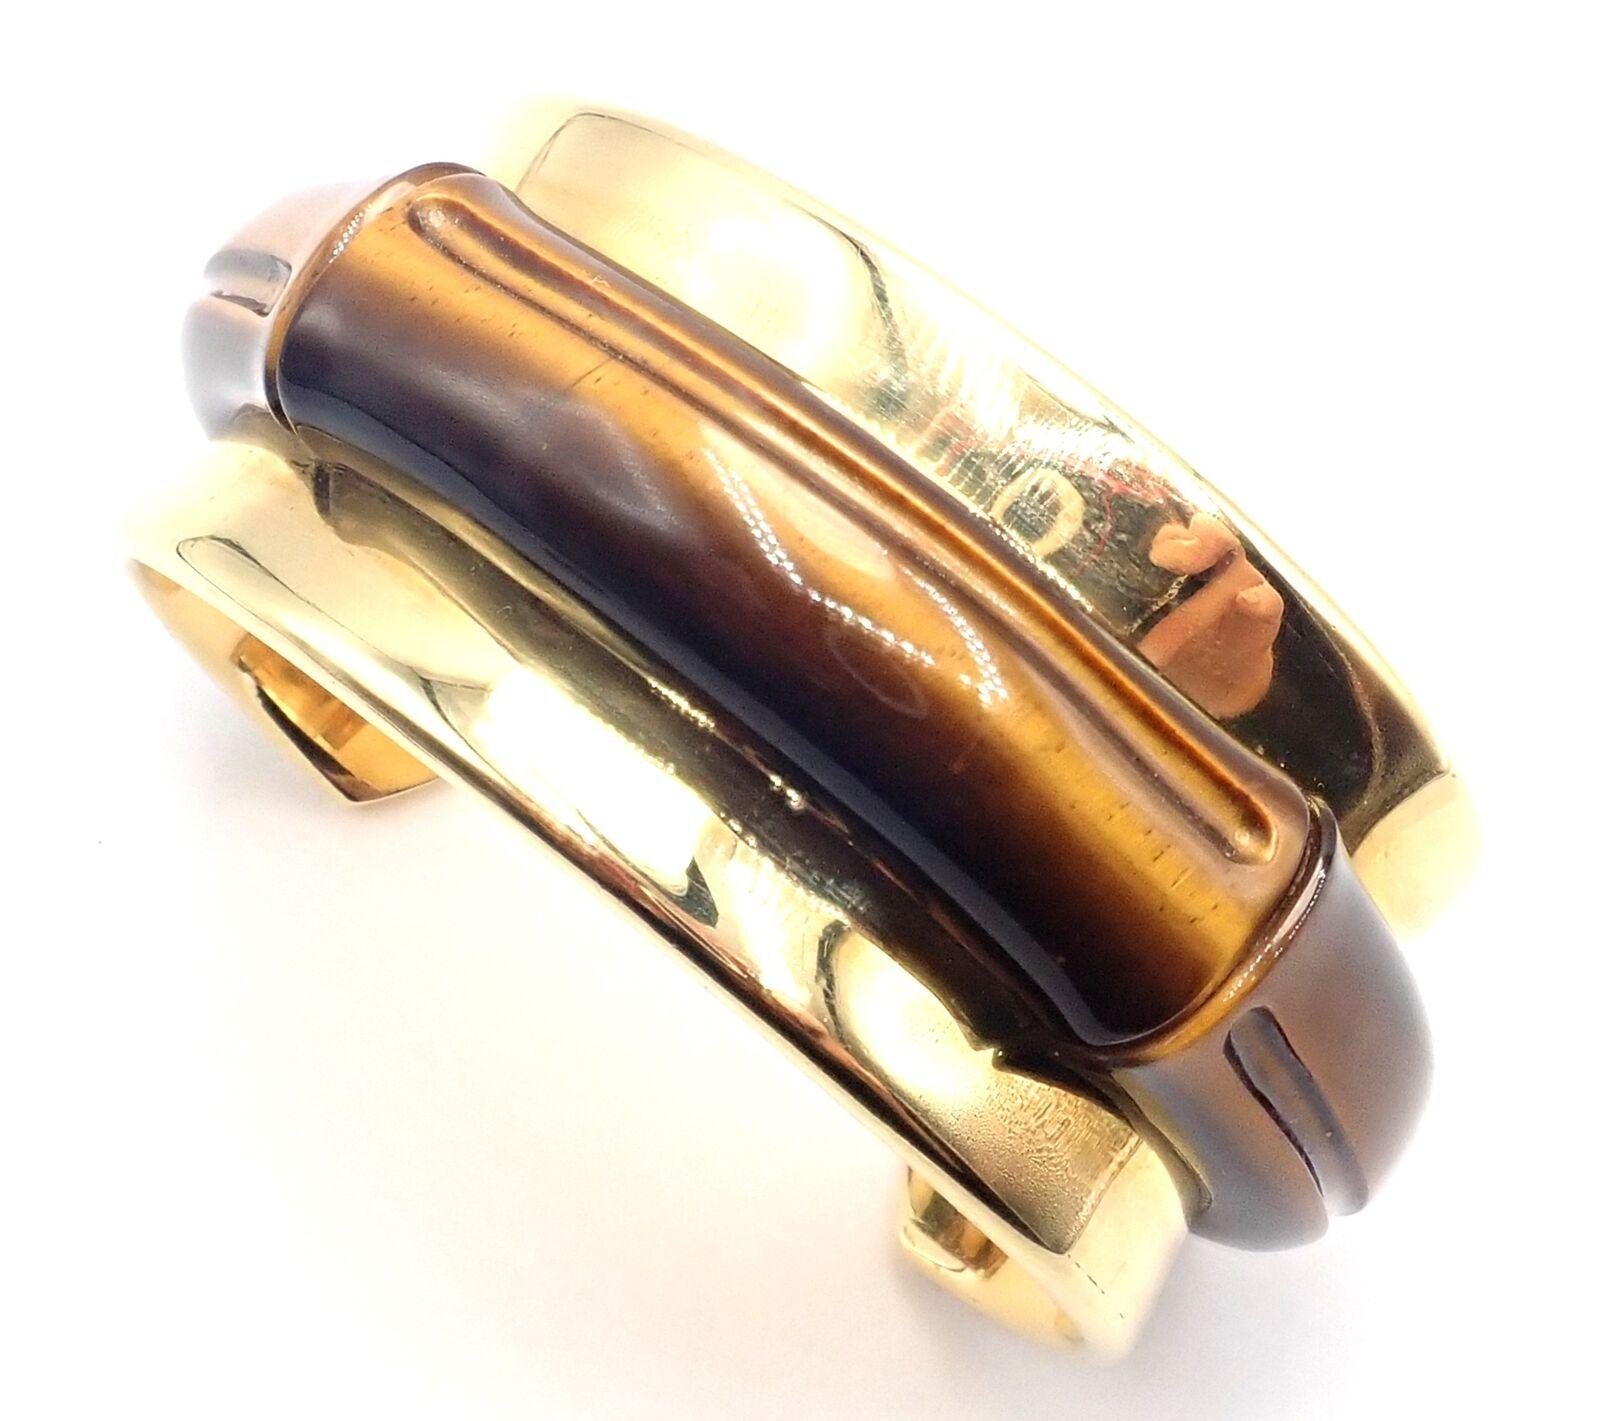 Bracelet manchette en or jaune 18k avec œil de tigre de Tiffany & Co 2002.
Avec pierre œil de tigre.
Détails : 
Poids : 87,4 grammes
Longueur : 7